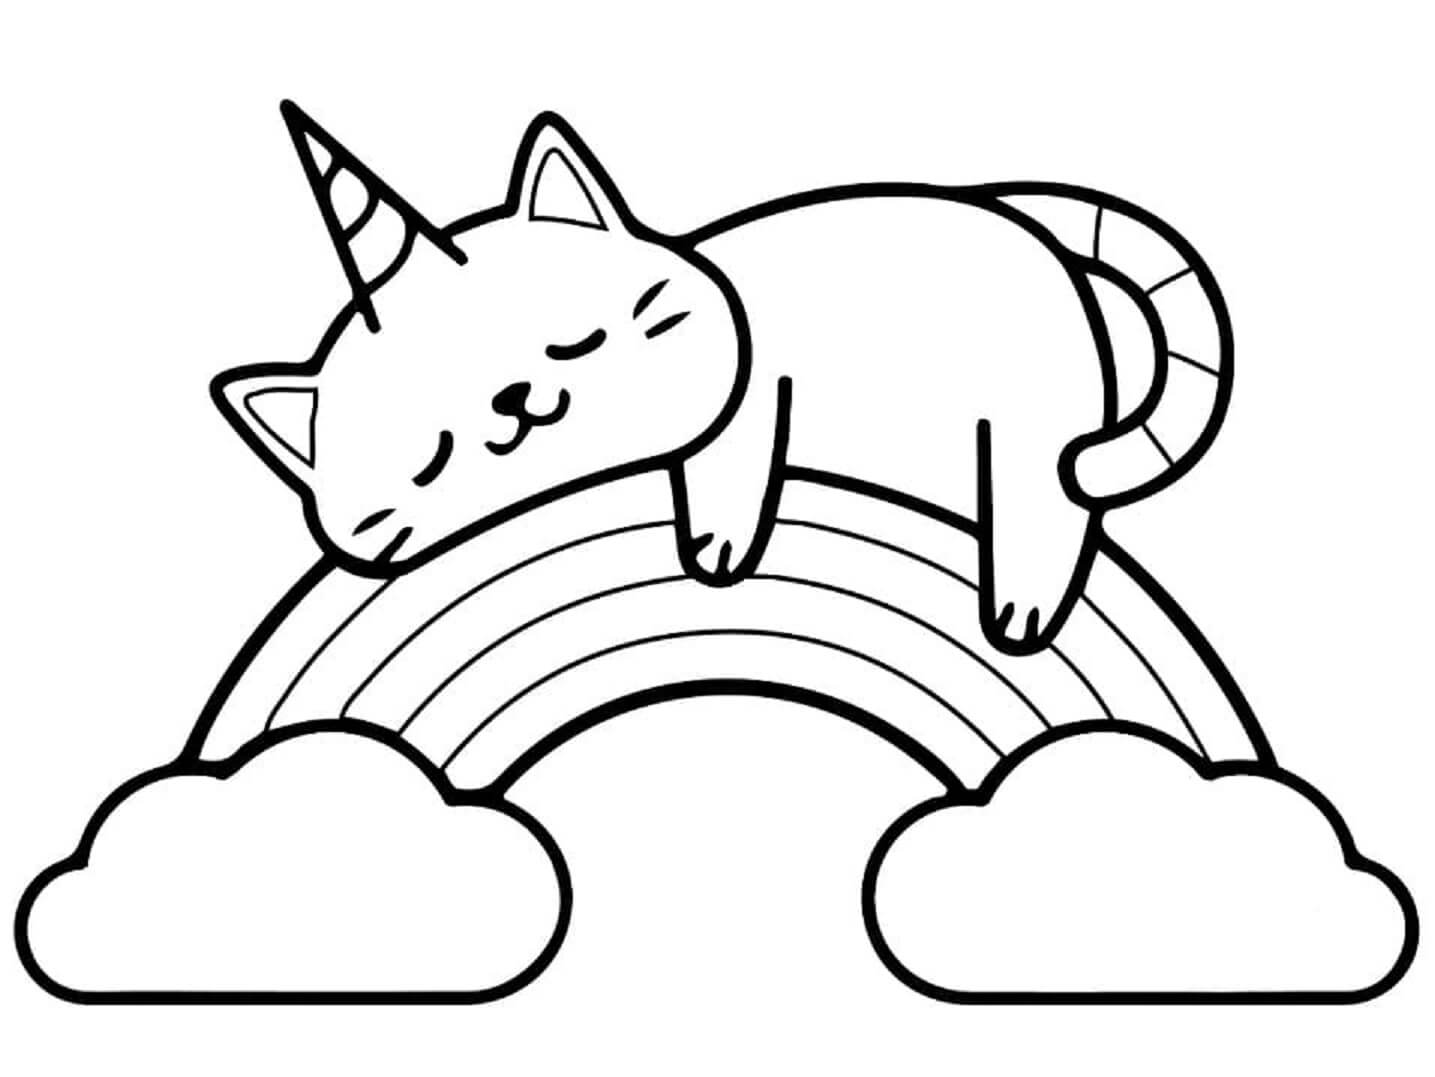 무지개 위에서 자고 있는 유니콘 고양이